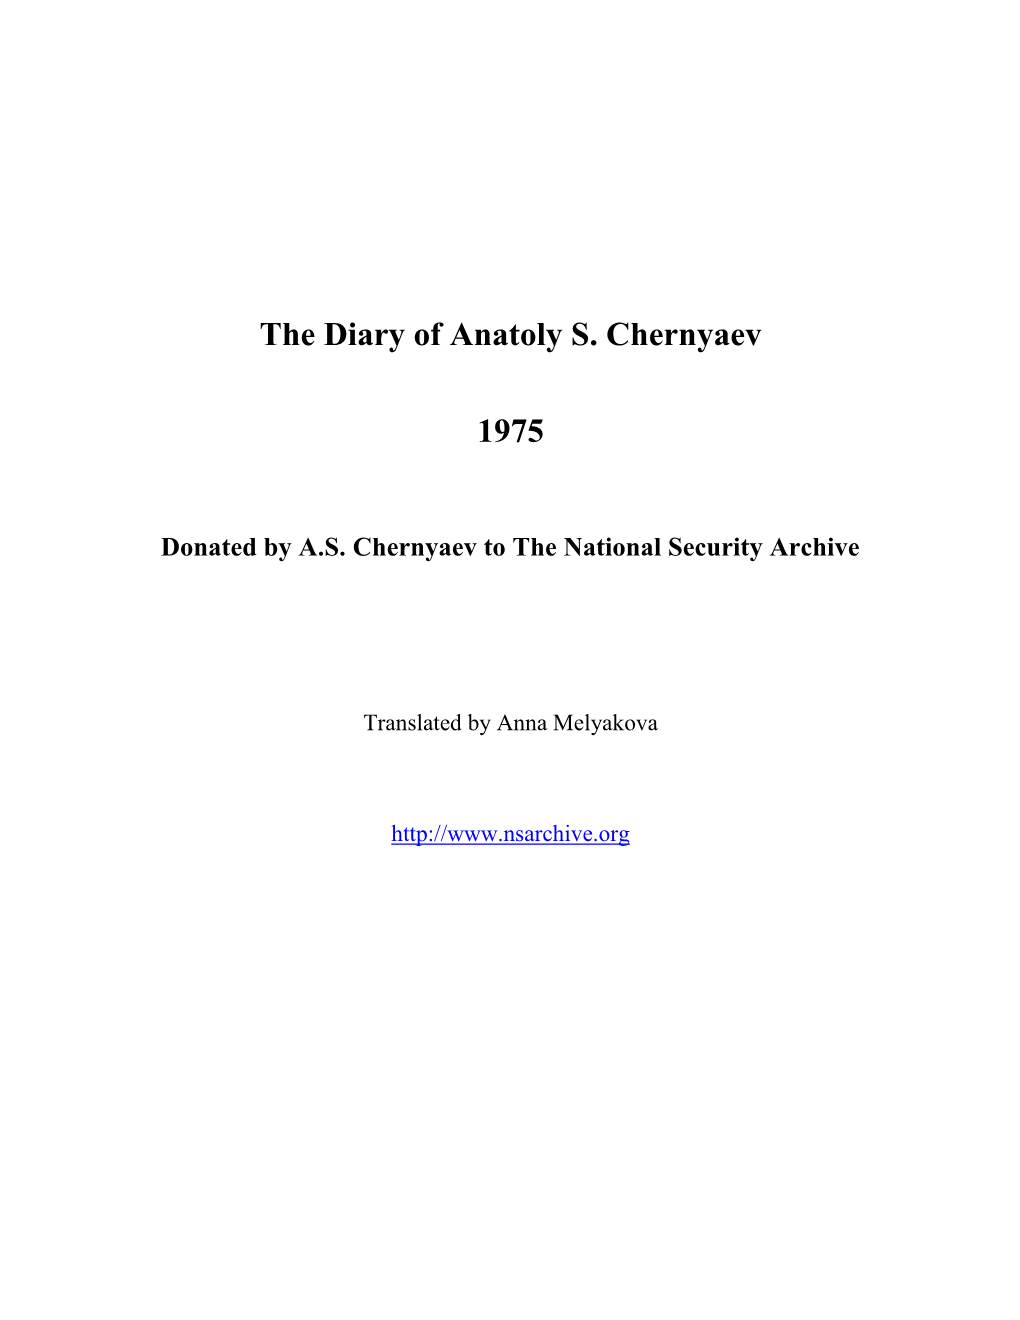 The Diary of Anatoly S. Chernyaev 1975